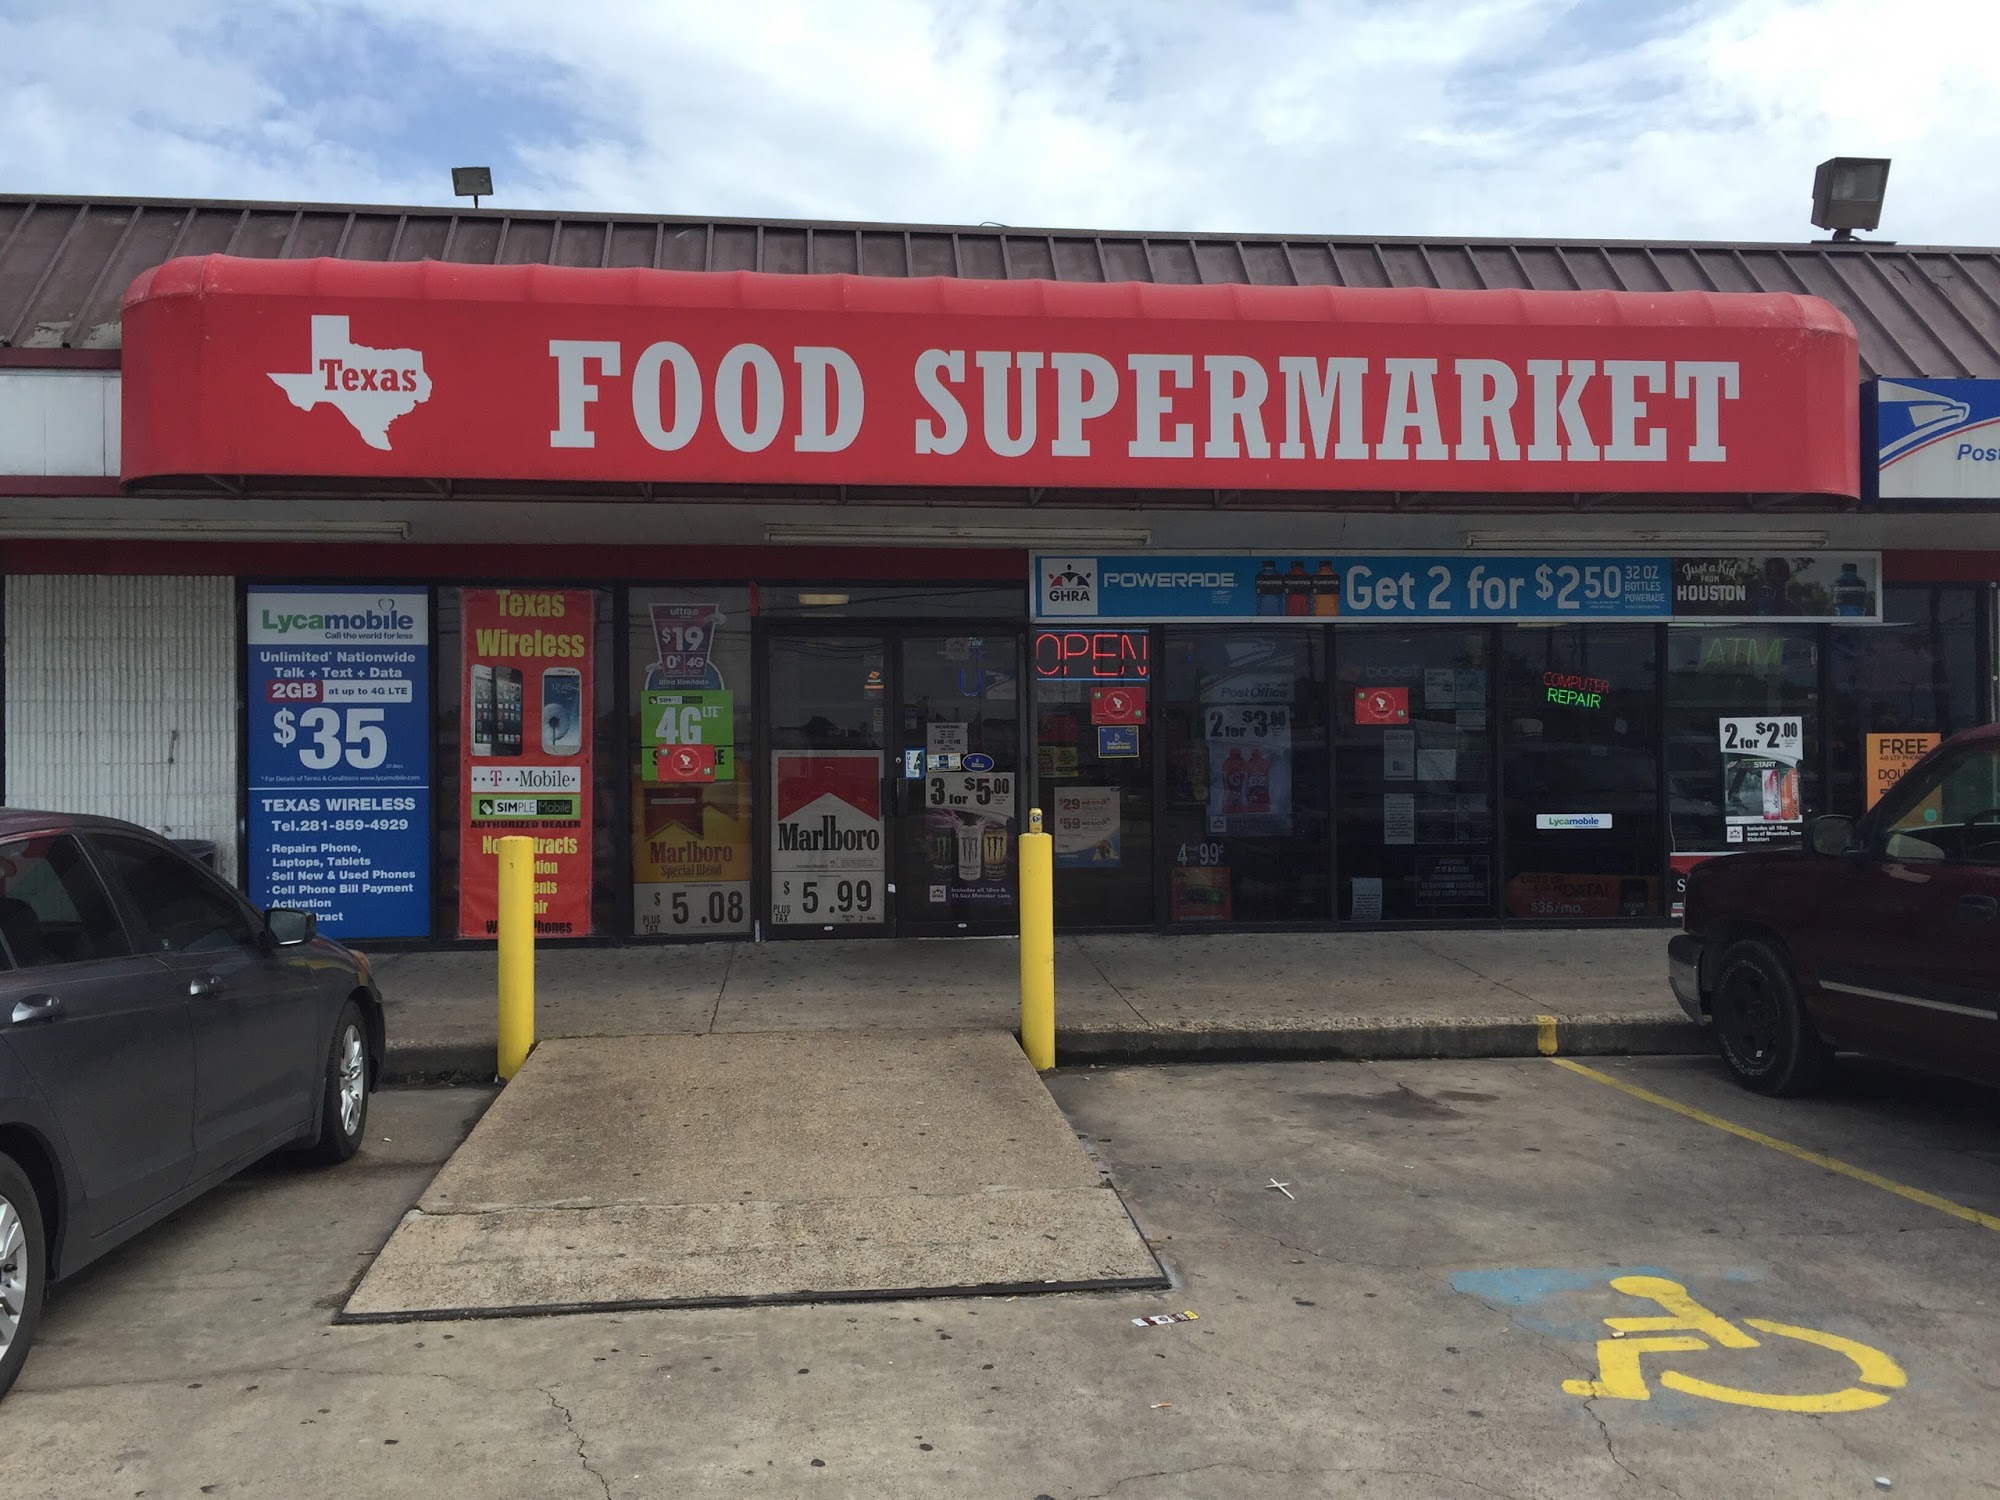 Texas Food Supermarket